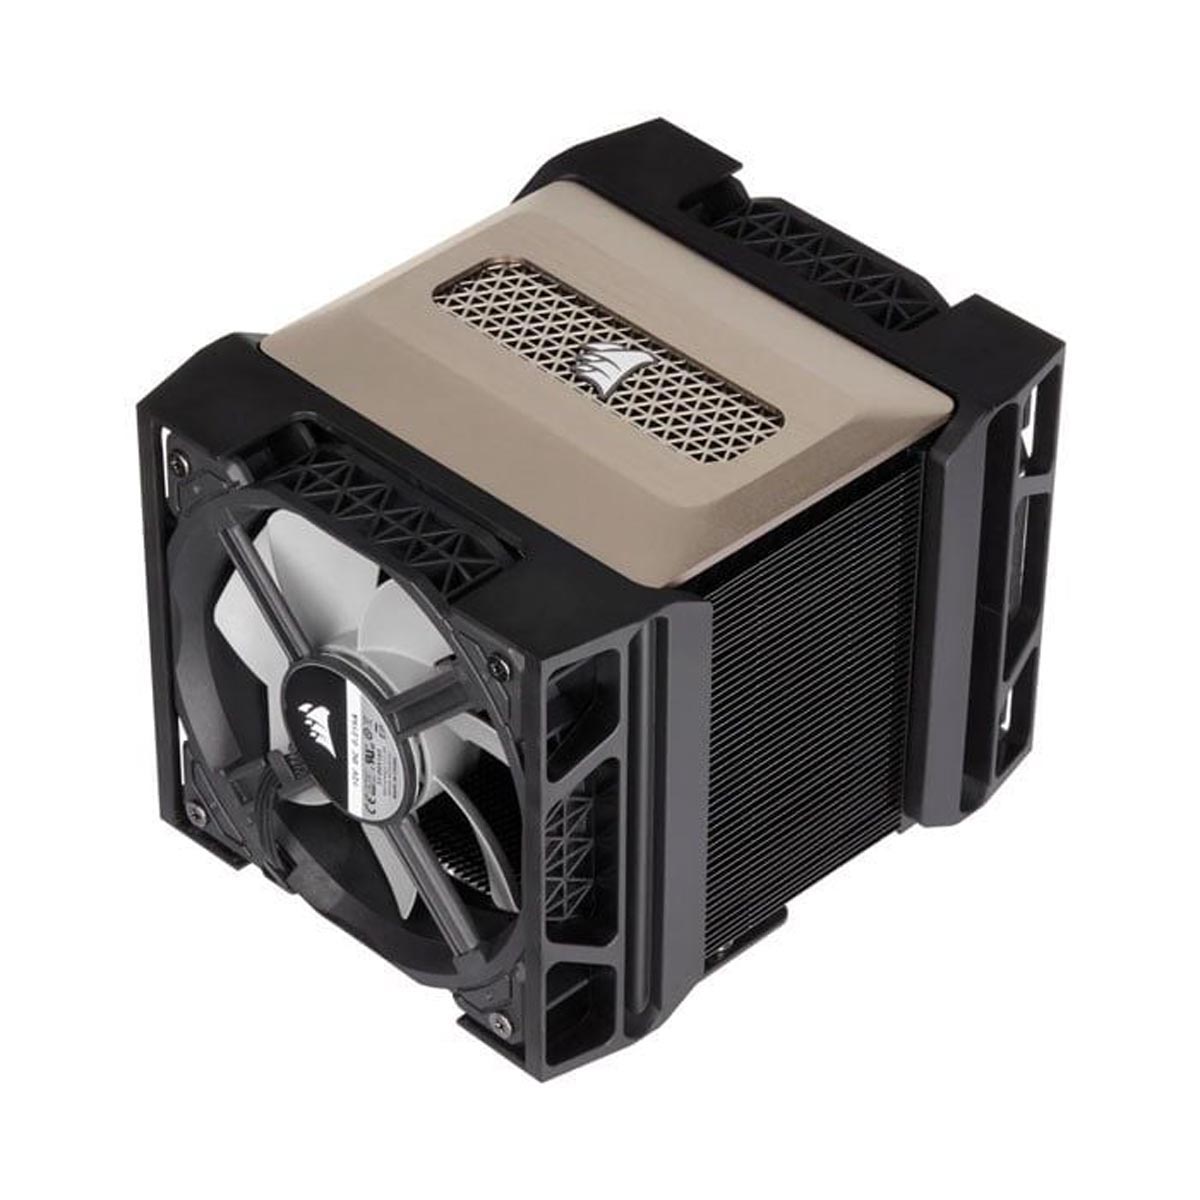 Tản nhiệt khí CPU Corsair A500 Dual Fan Air Cooling